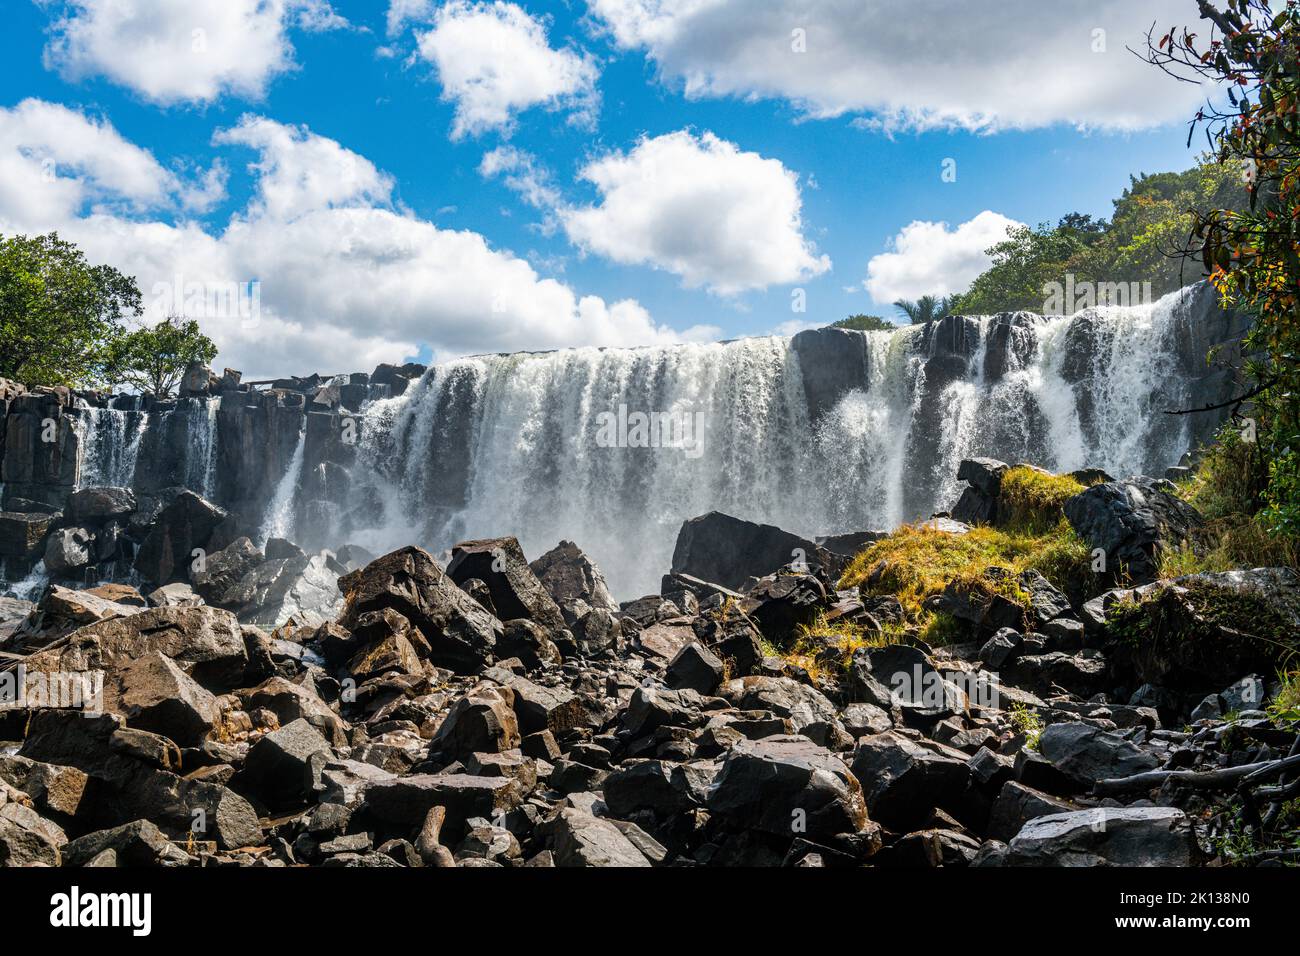 Mutumuna Falls, Kasama, Zambia, Africa Stock Photo